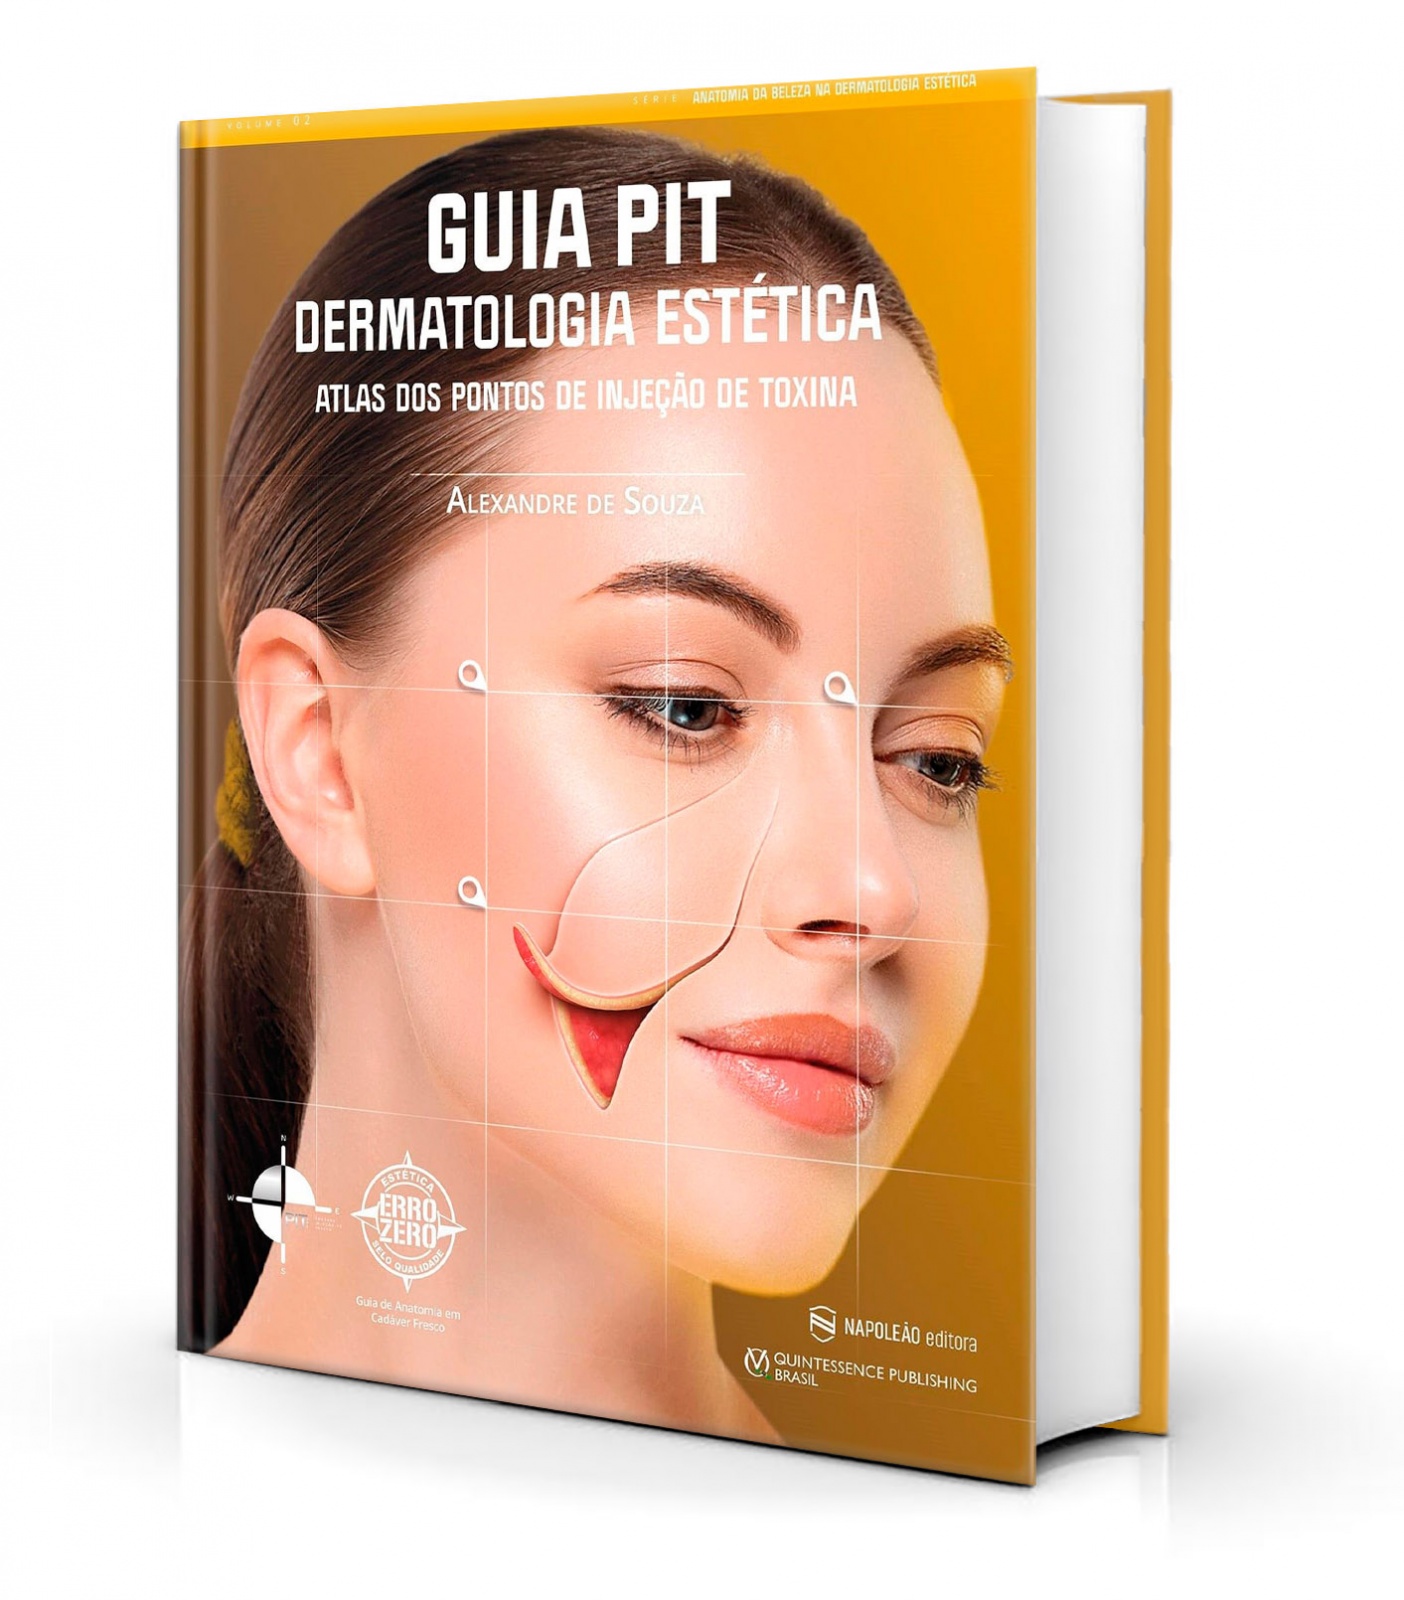 Toxina Botulínica - Aplicações em Odontologia by Editora Ponto - Issuu